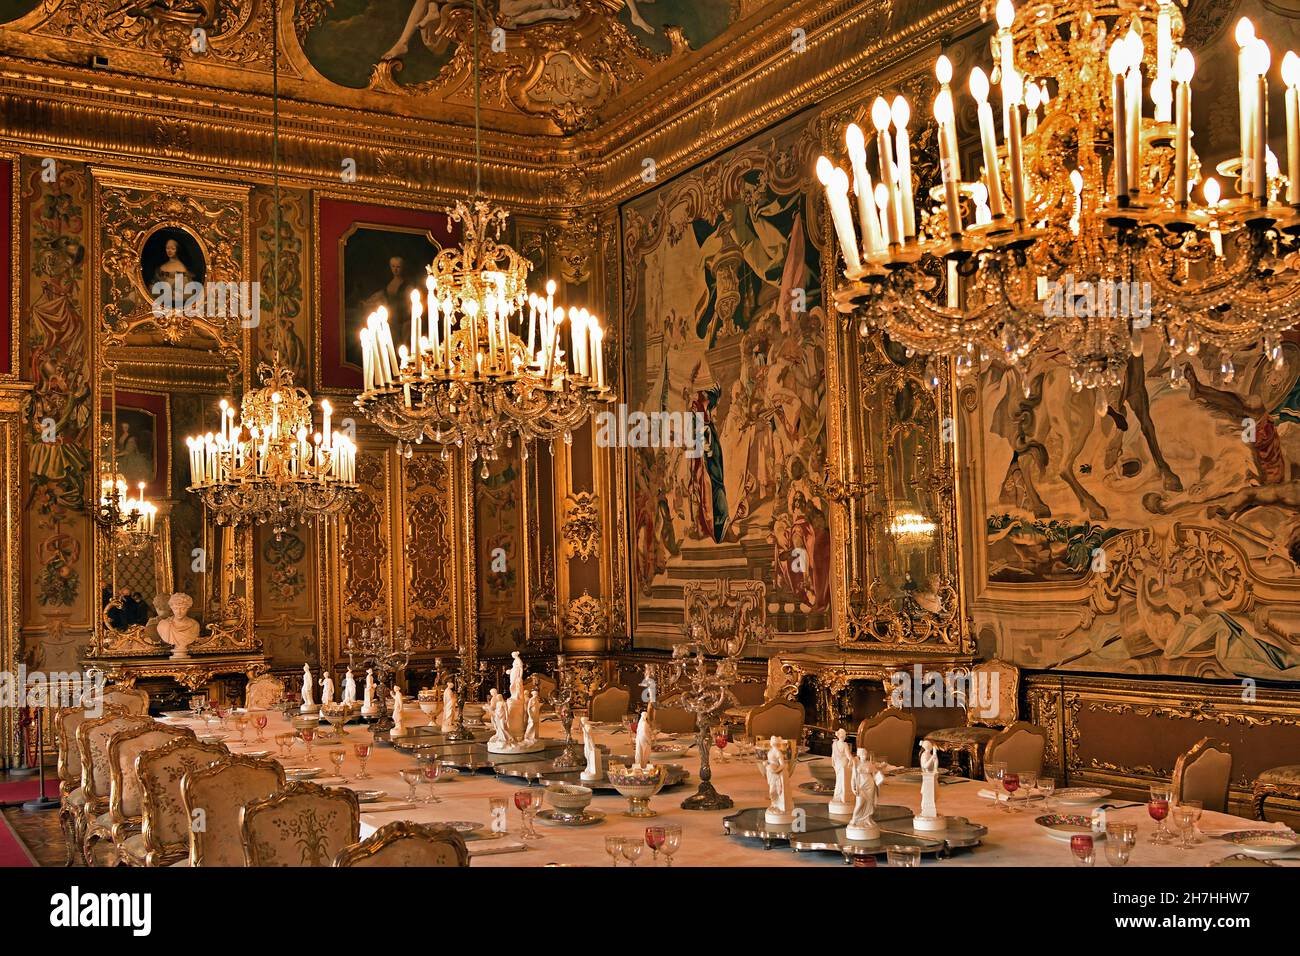 La salle à manger Torino Palazzo Reale - Palais Royal de Turin, Italien, Italie Goblin Banque D'Images